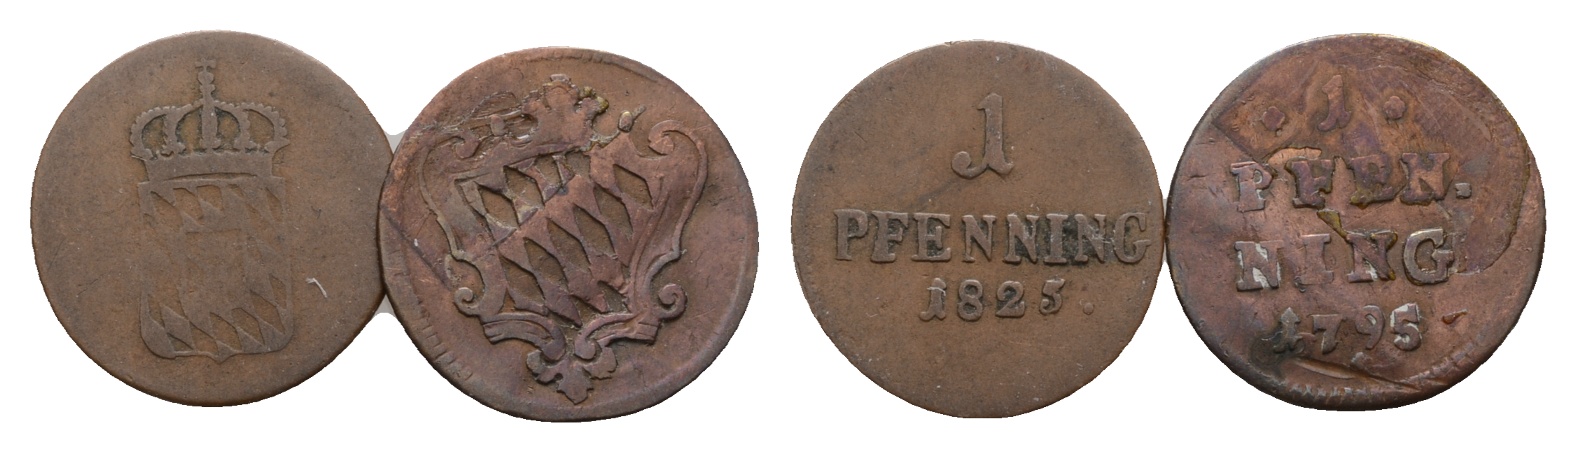  Altdeutschland; 2 Kleinmünzen 1825 / 1795   